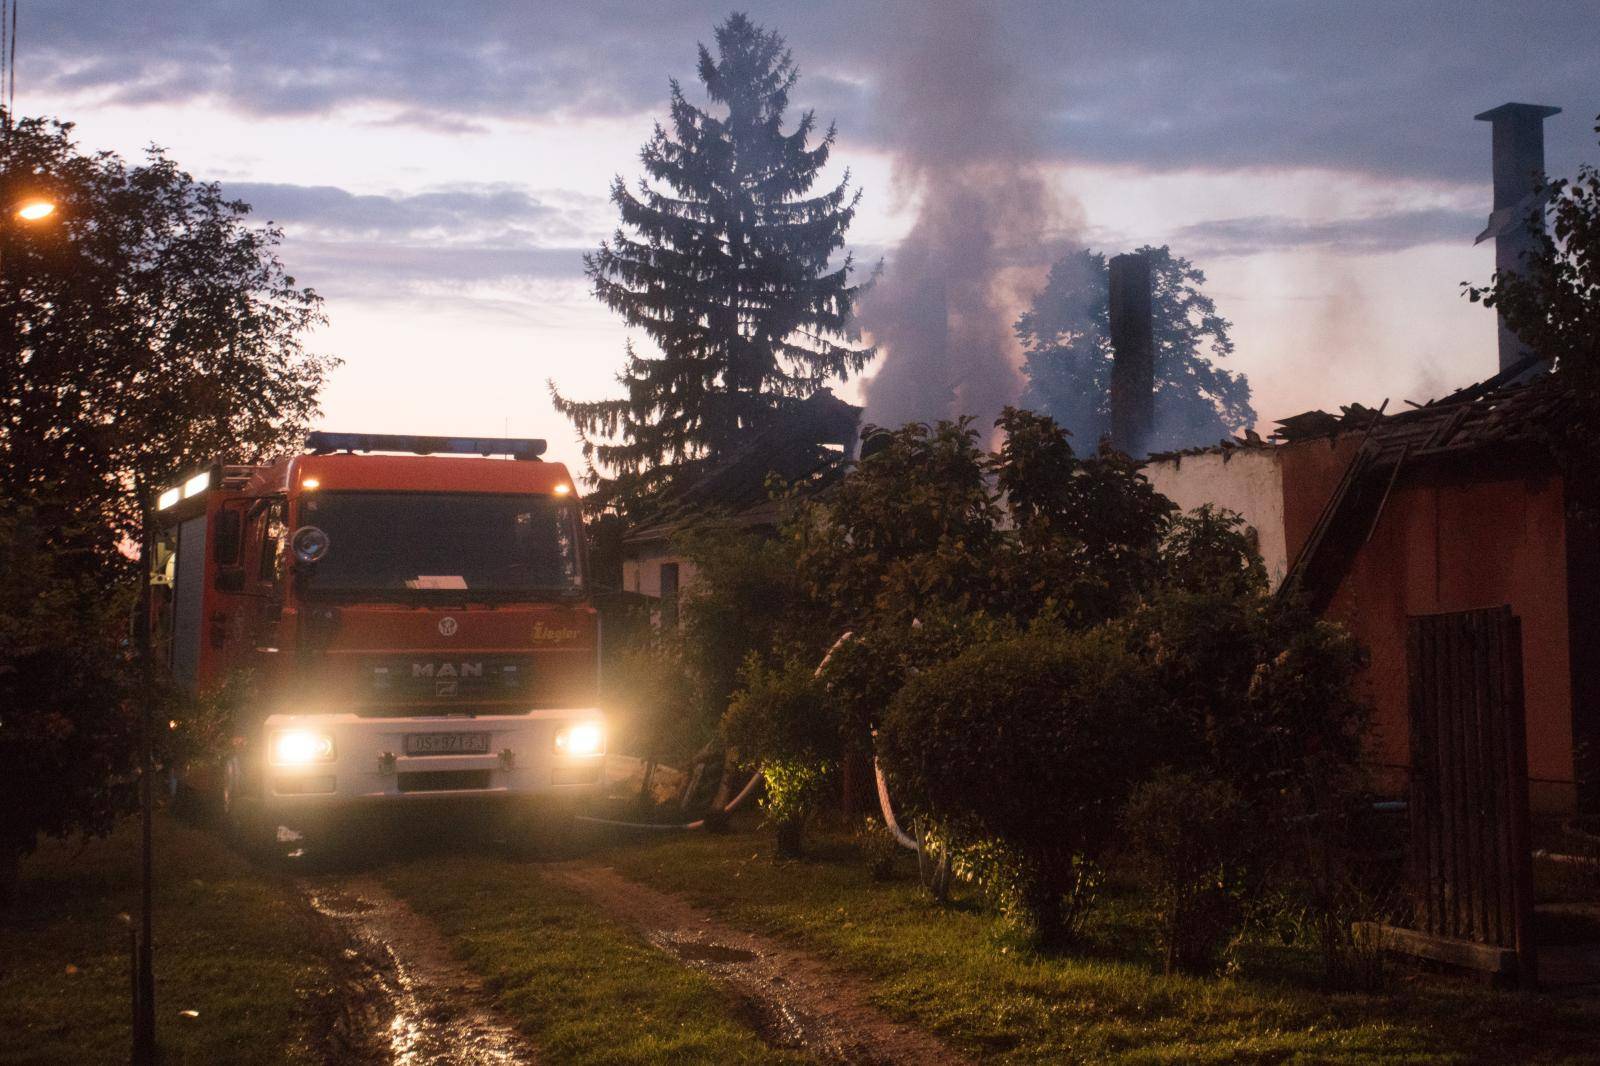 Kuća im izgorjela, a on obolio: 'Više nema ni moga Zvonimira'